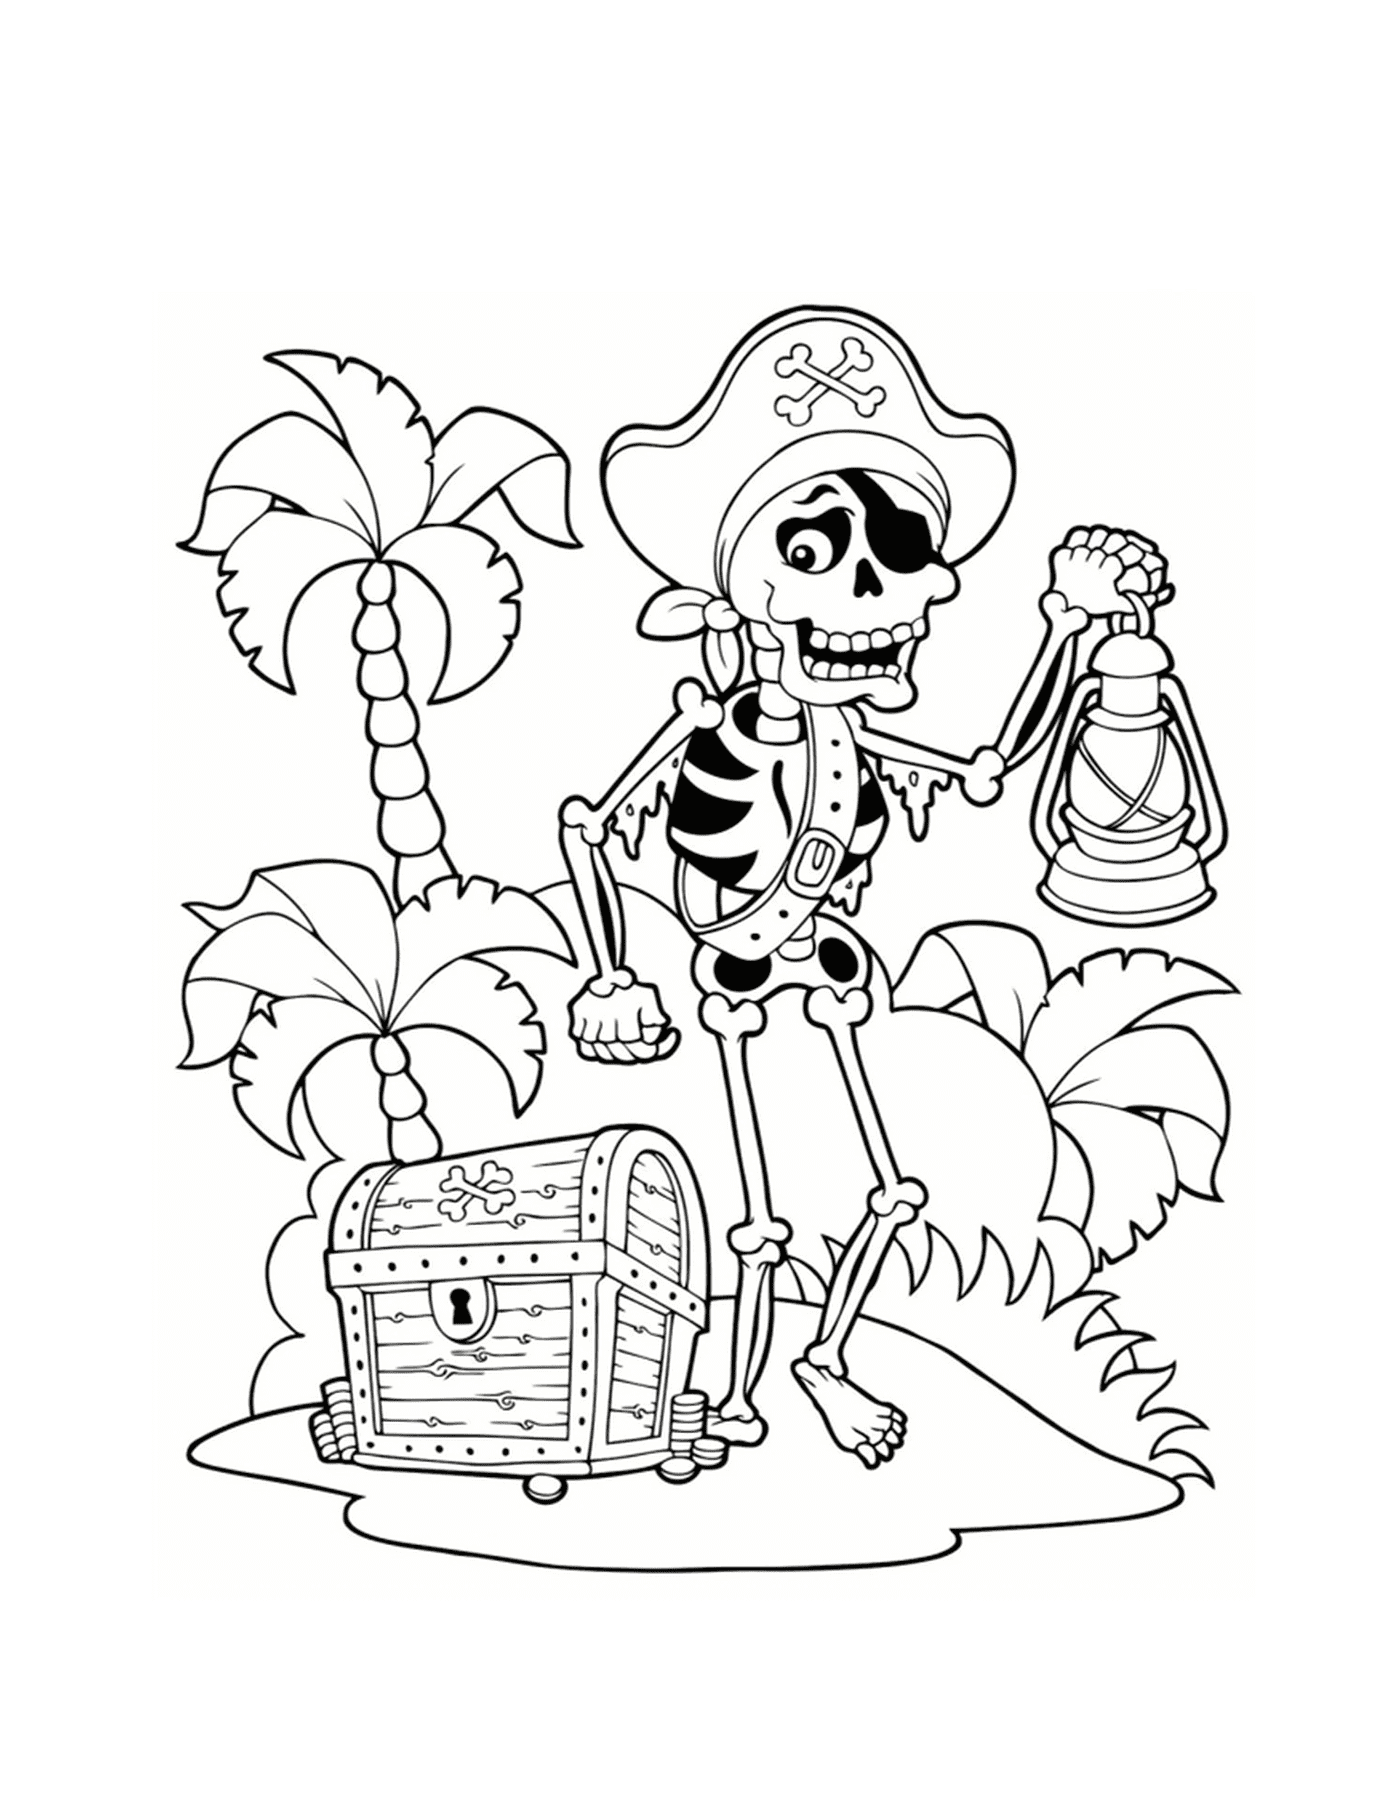  Esqueleto pirata, tesoro en la isla 